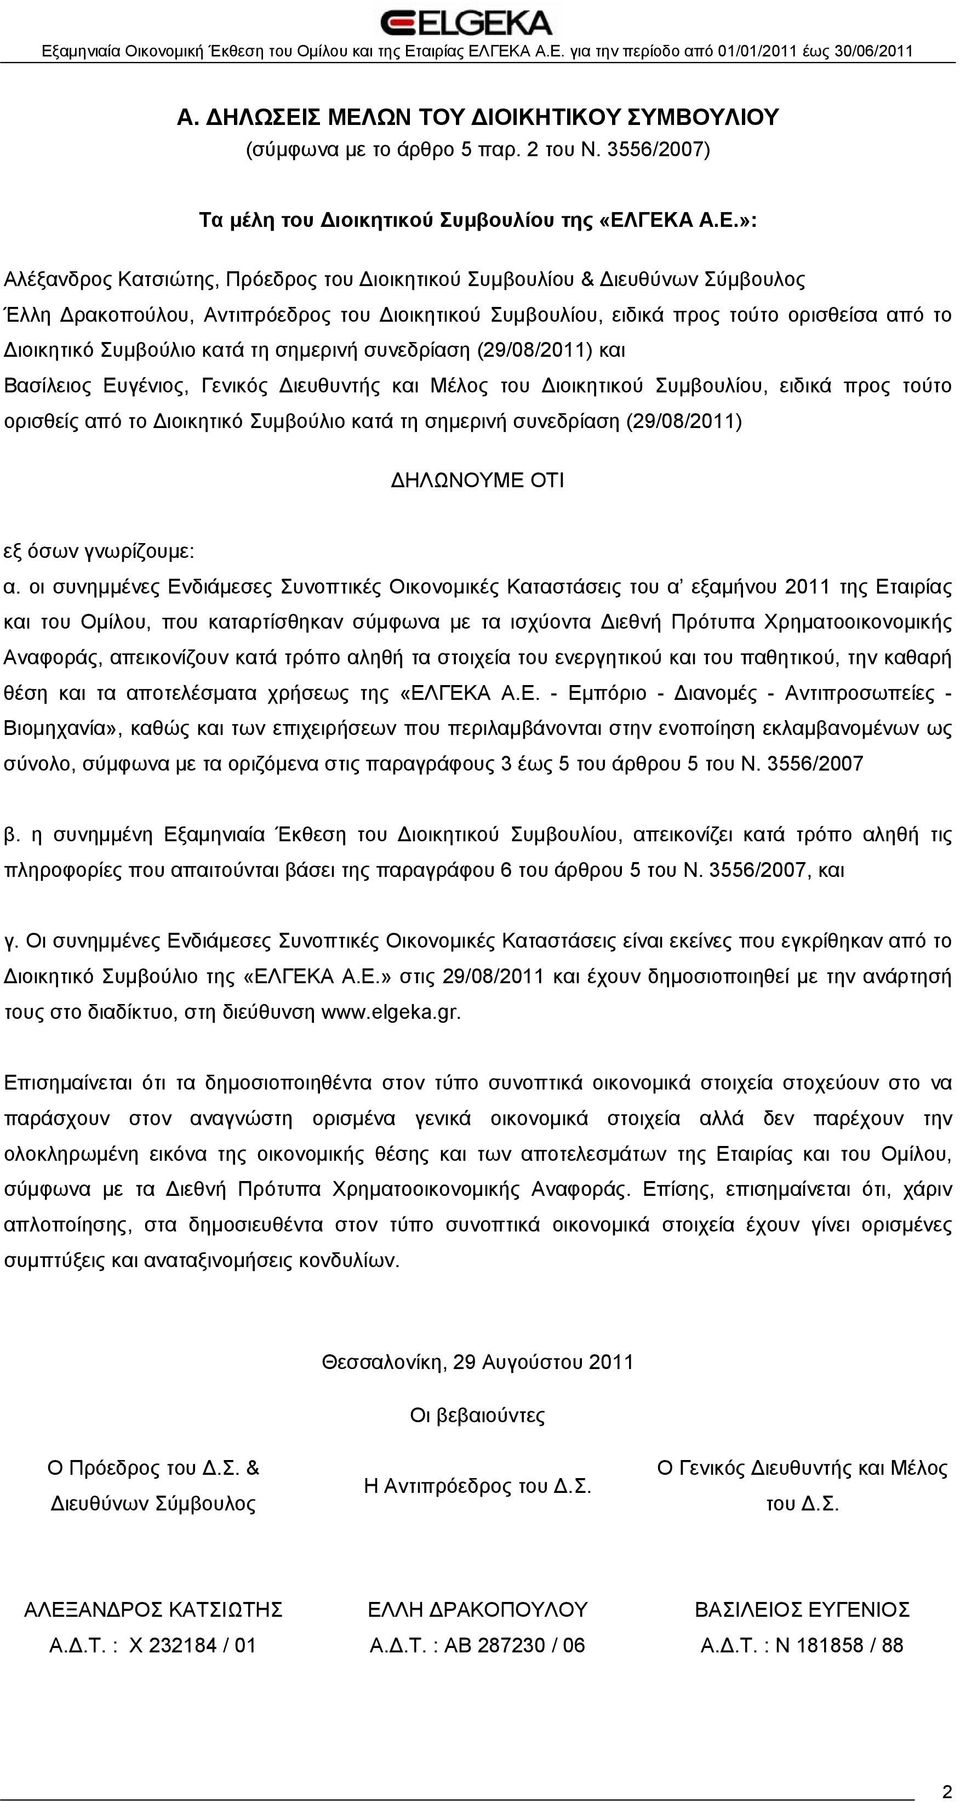 Διευθύνων Σύμβουλος Έλλη Δρακοπούλου, Αντιπρόεδρος του Διοικητικού Συμβουλίου, ειδικά προς τούτο ορισθείσα από το Διοικητικό Συμβούλιο κατά τη σημερινή συνεδρίαση (29/08/2011) και Βασίλειος Ευγένιος,